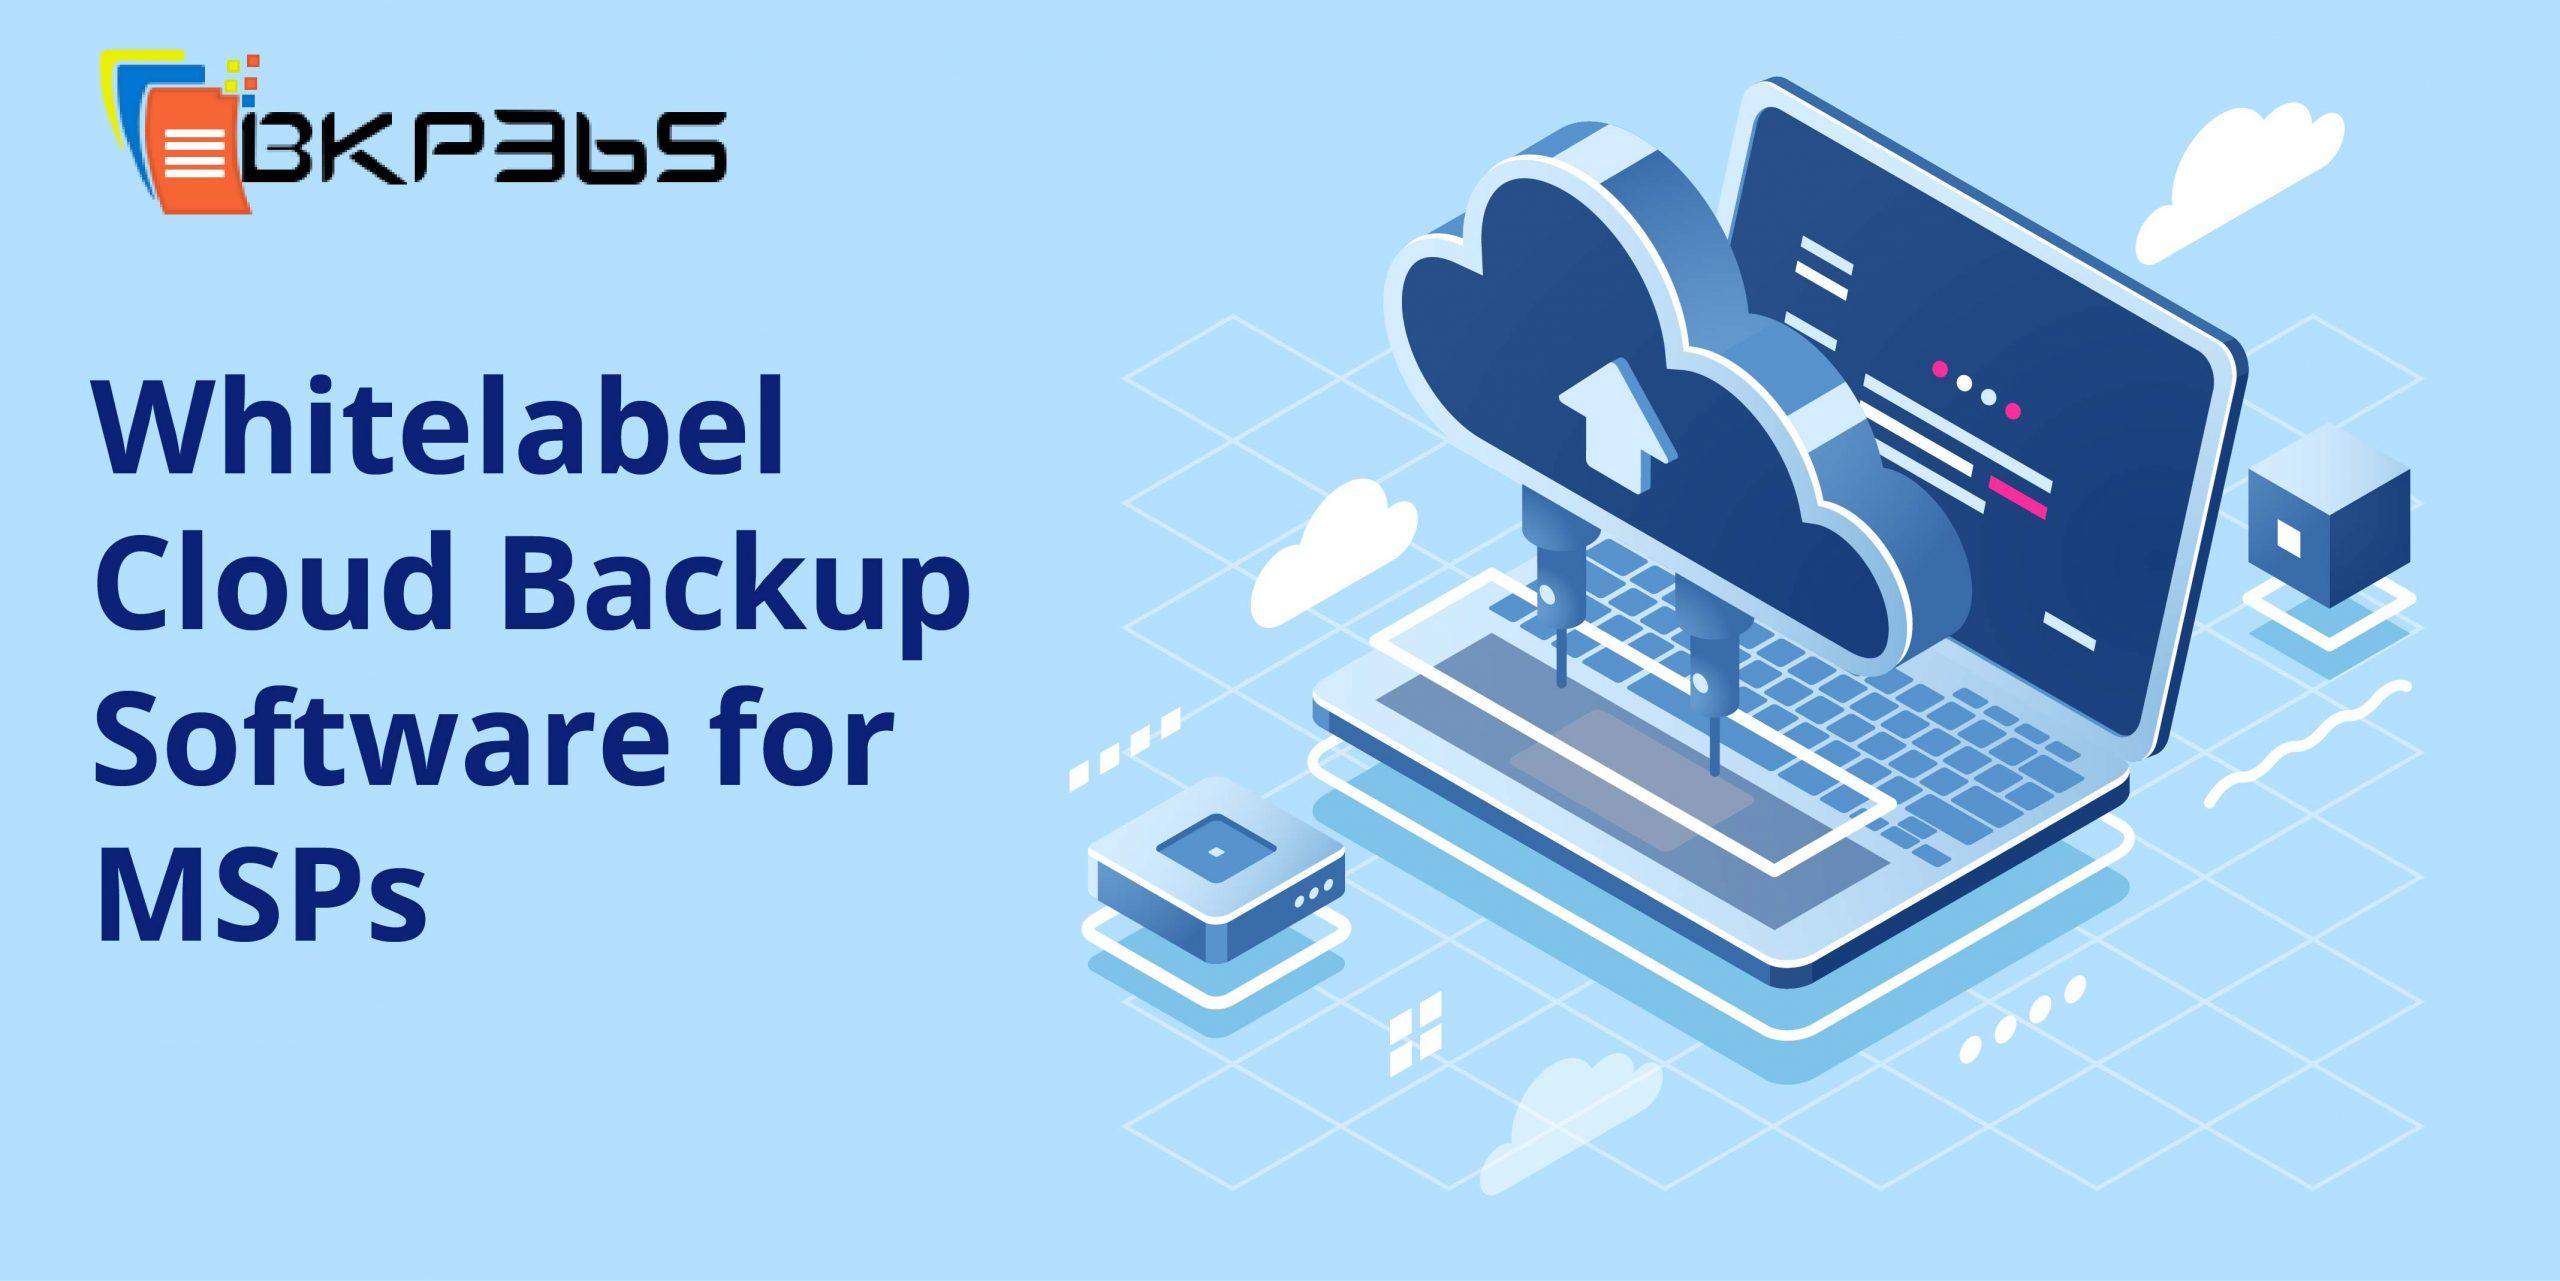 Cloud Backup Software for MSPs - Whitelabel Backup Software